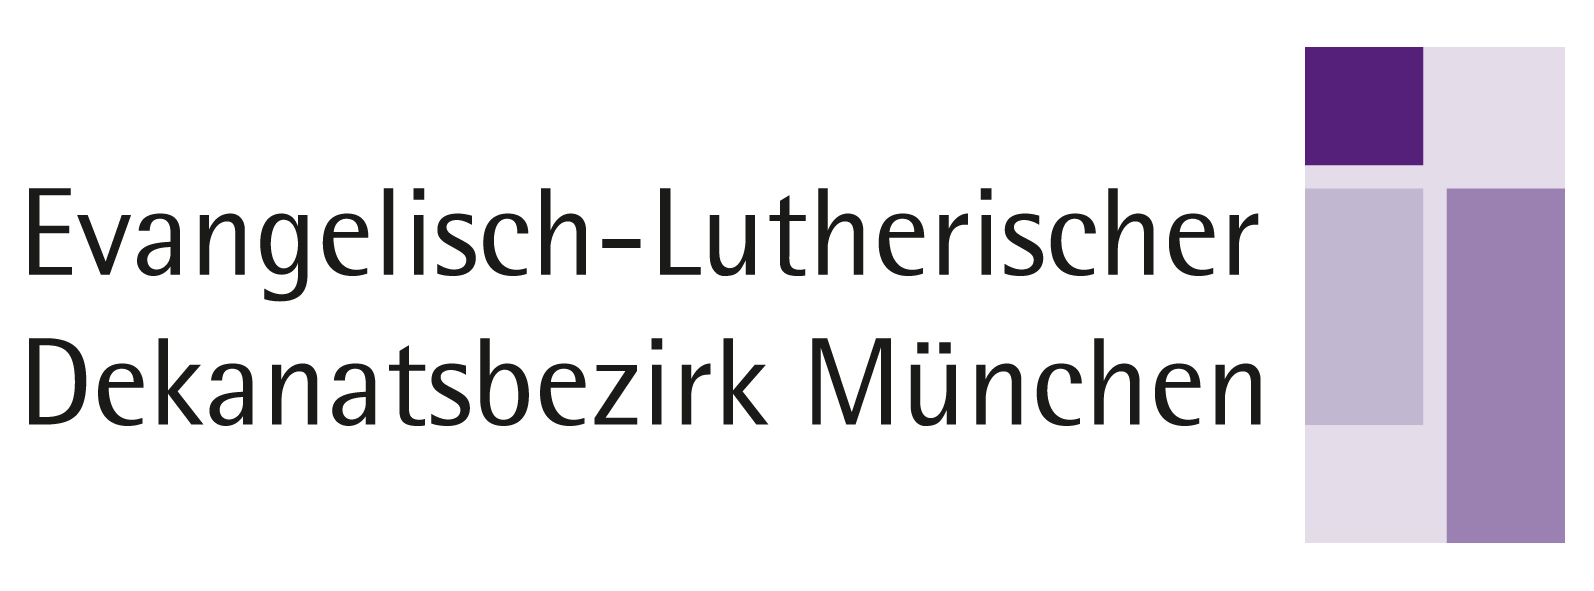 Evangelisch-Lutherischer Dekanatsbezirk München